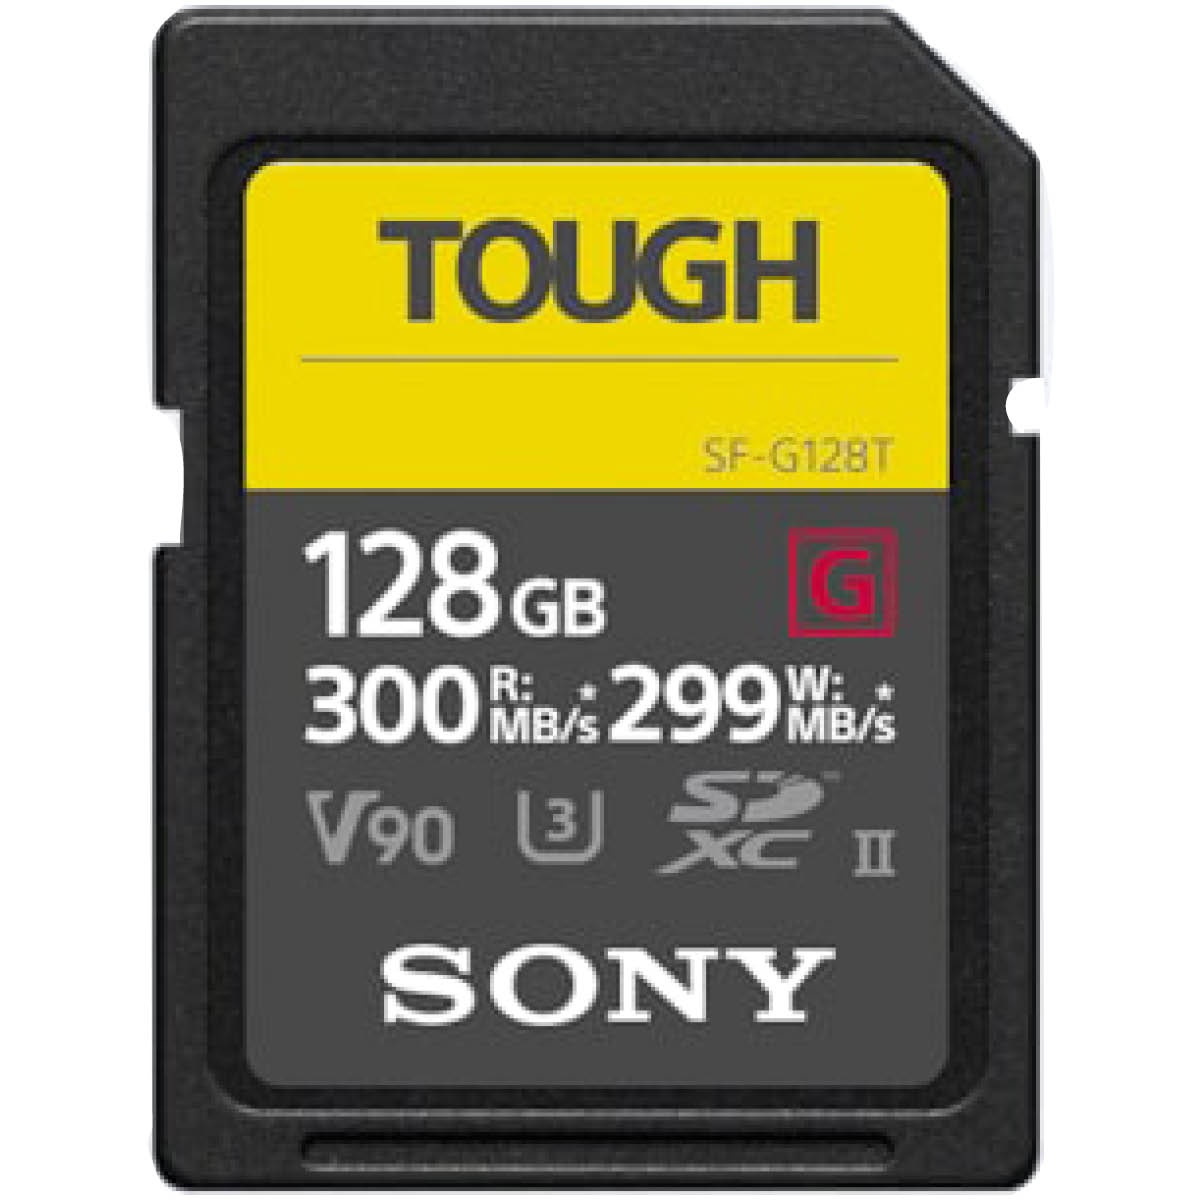 Sony 128 GB SDXC Tough G